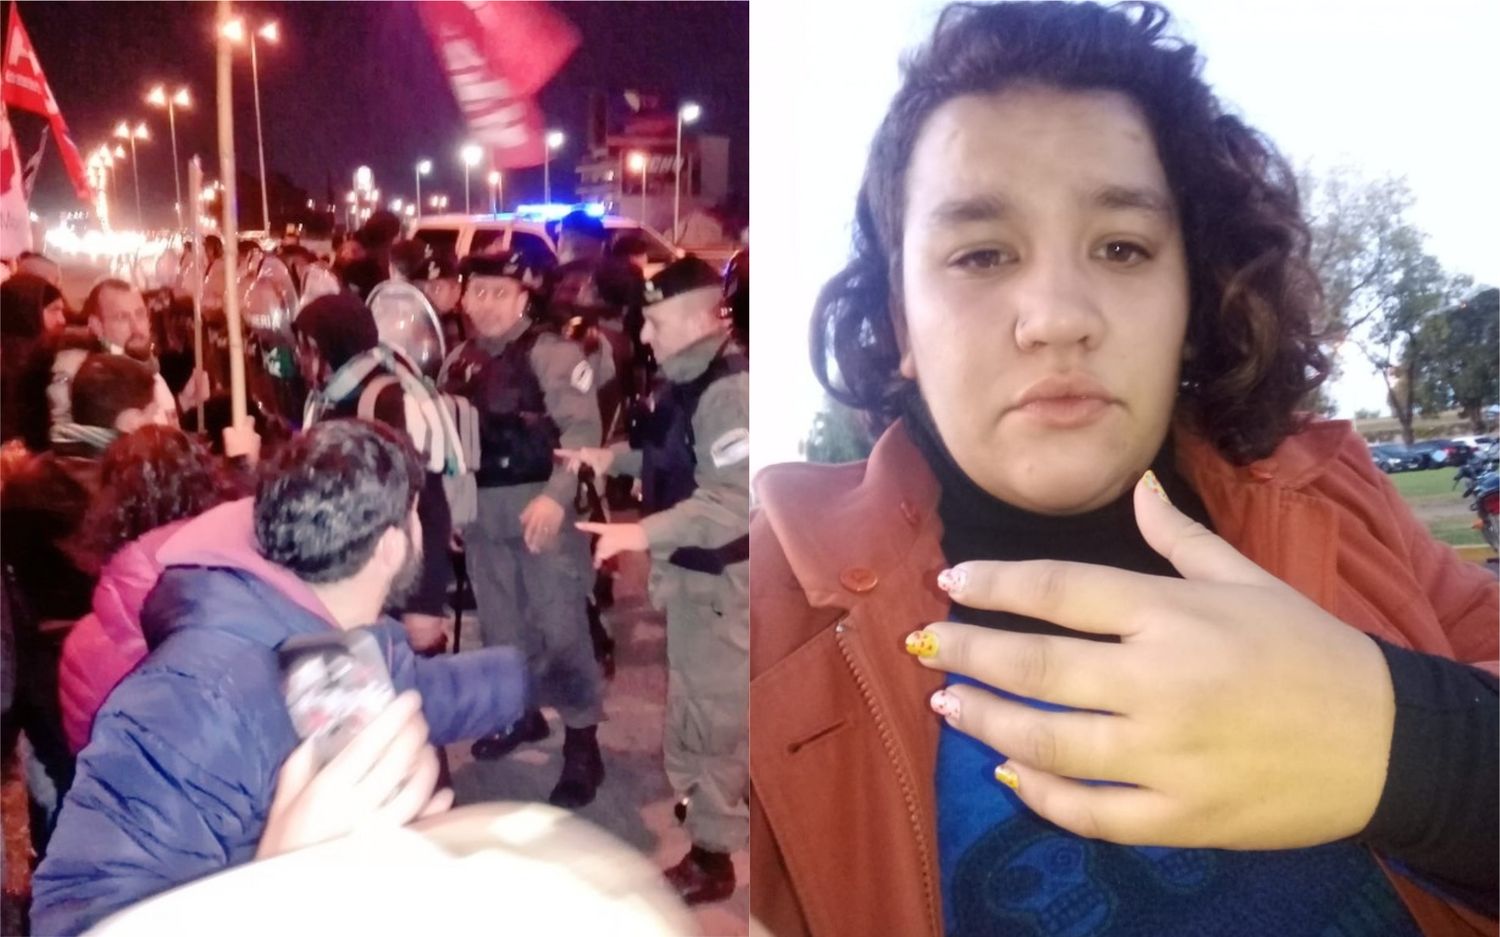 #ParoNacional: La represión en Acceso Oeste terminó con "una trabajadora fracturada" 